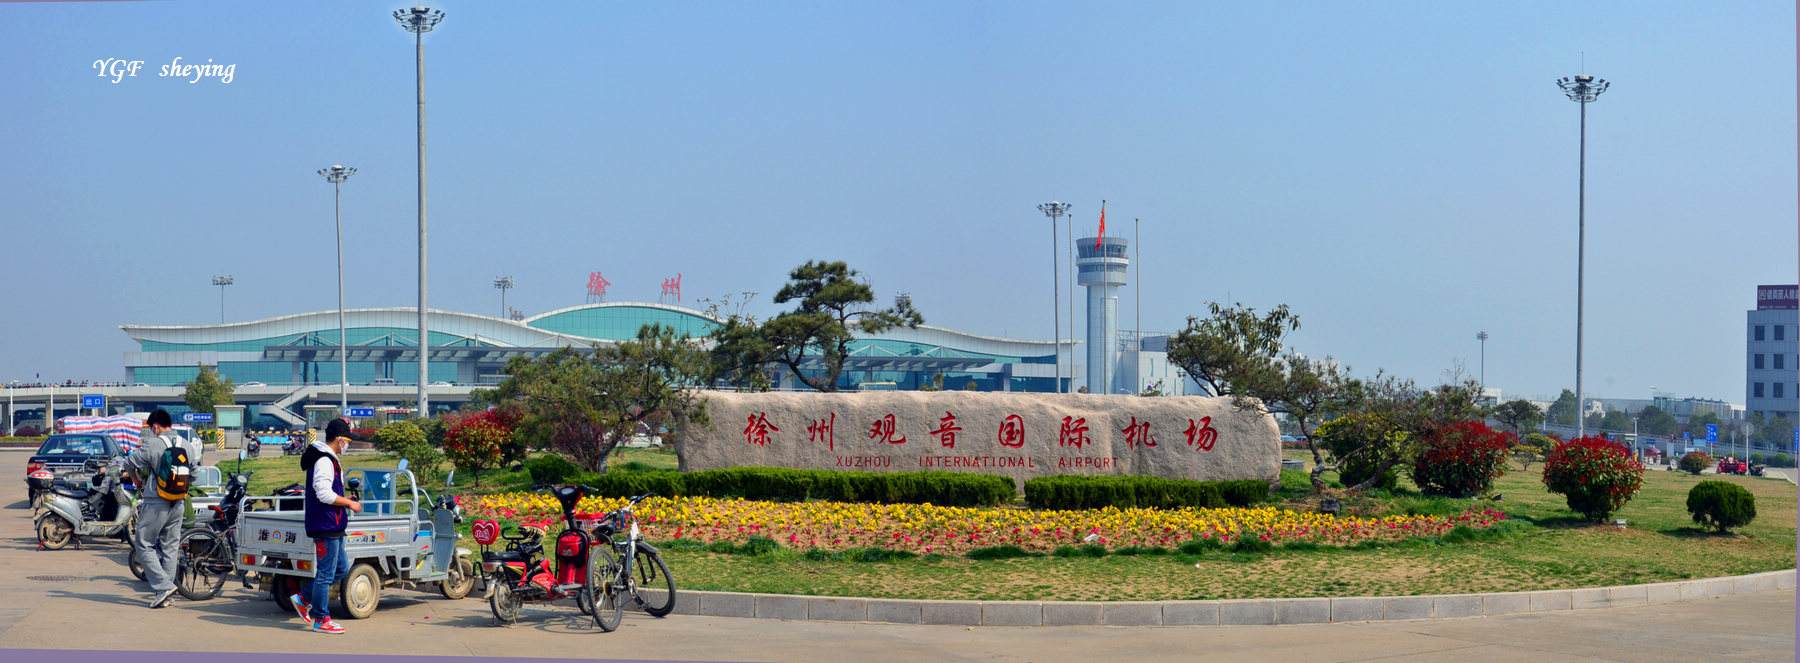 江蘇徐州空港經濟開發區